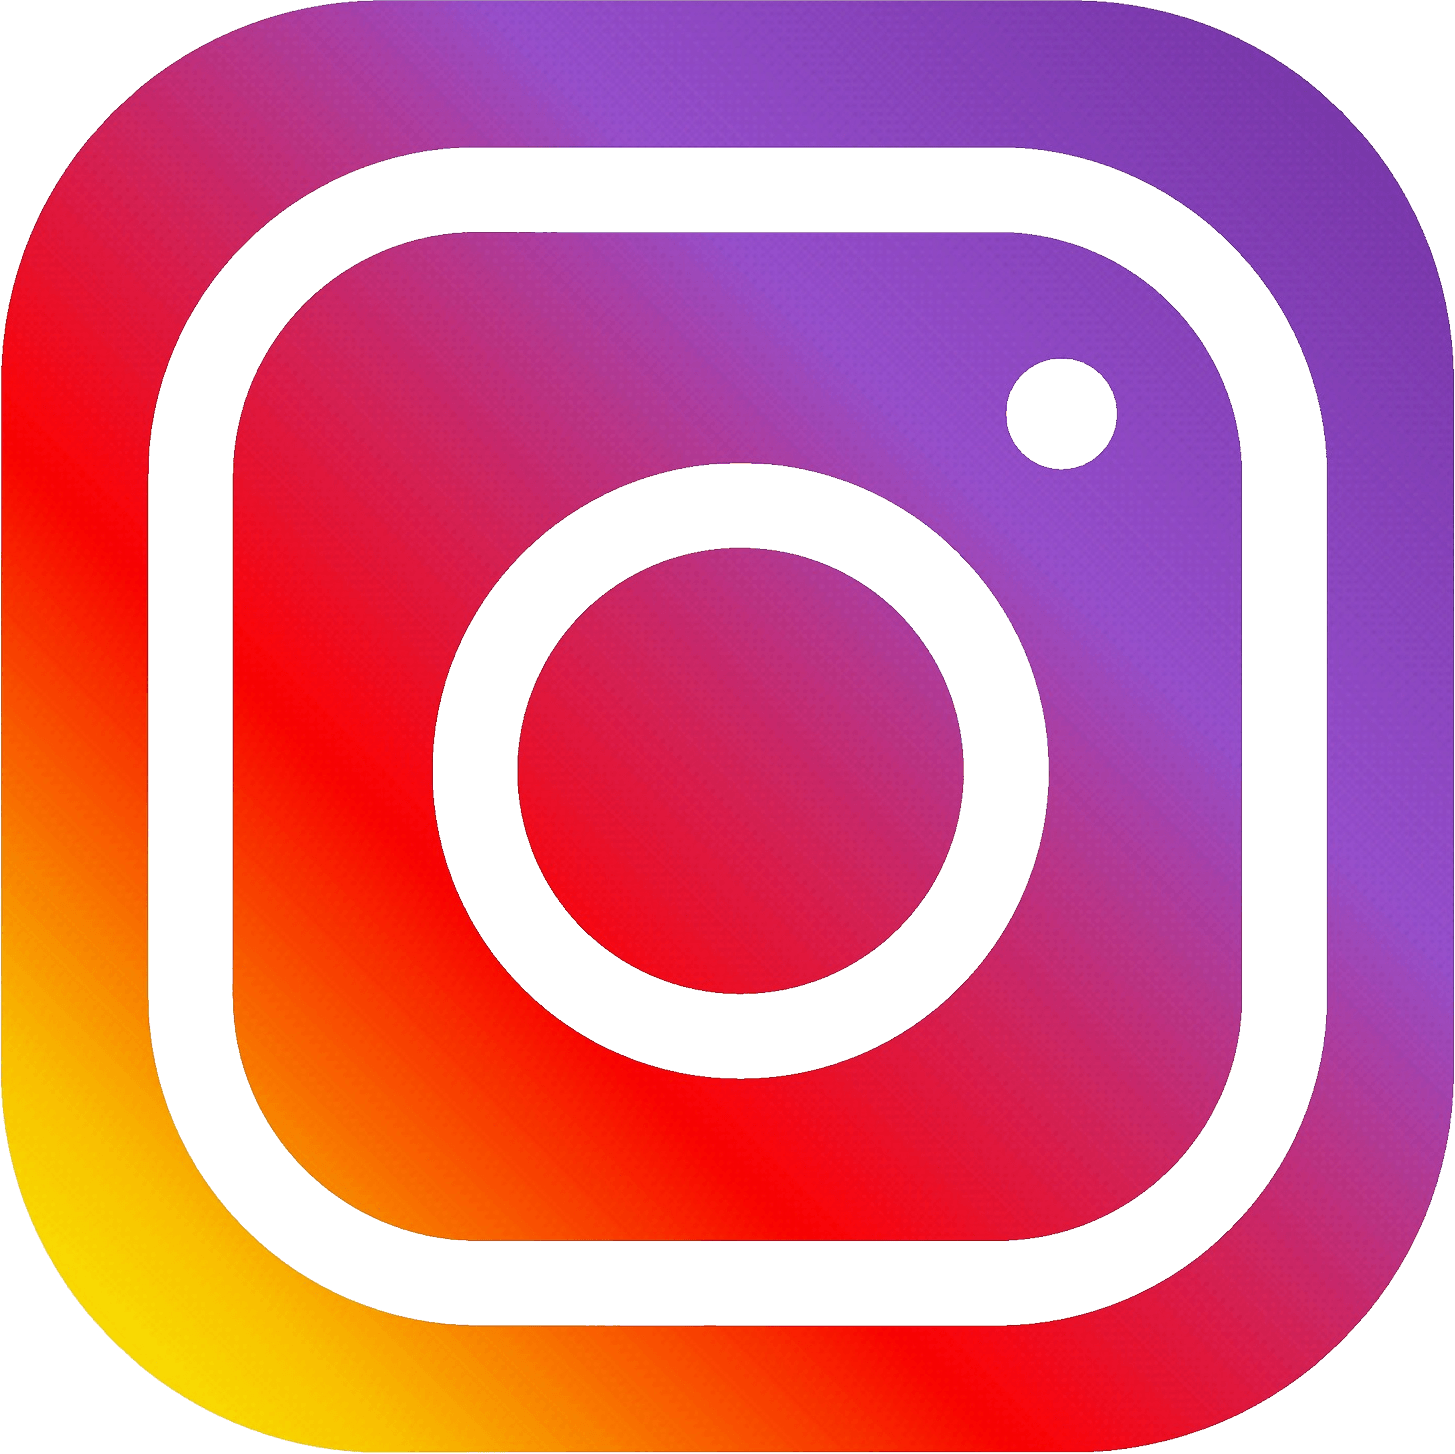 Intagram Logo - HQ Instagram PNG Transparent Instagram.PNG Images. | PlusPNG